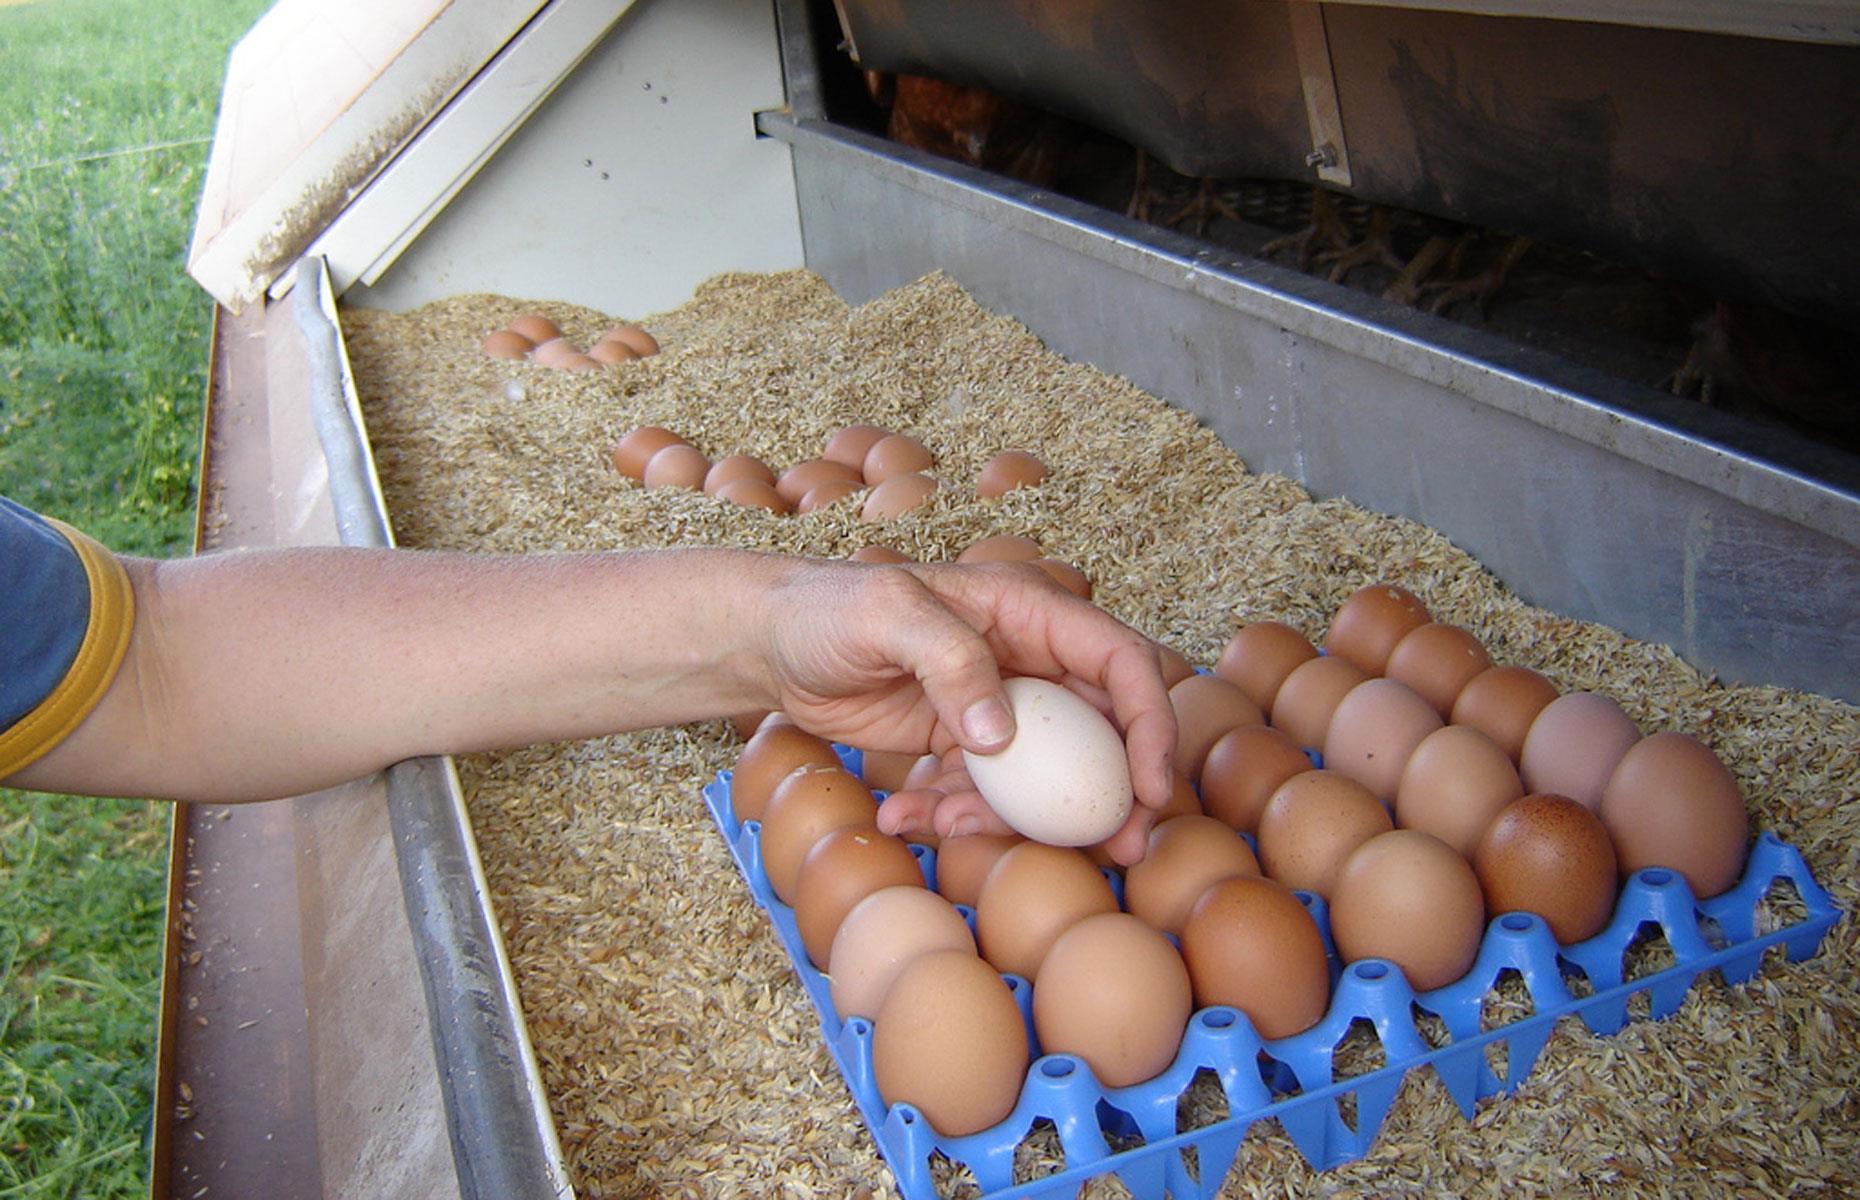 6. Chicken eggs